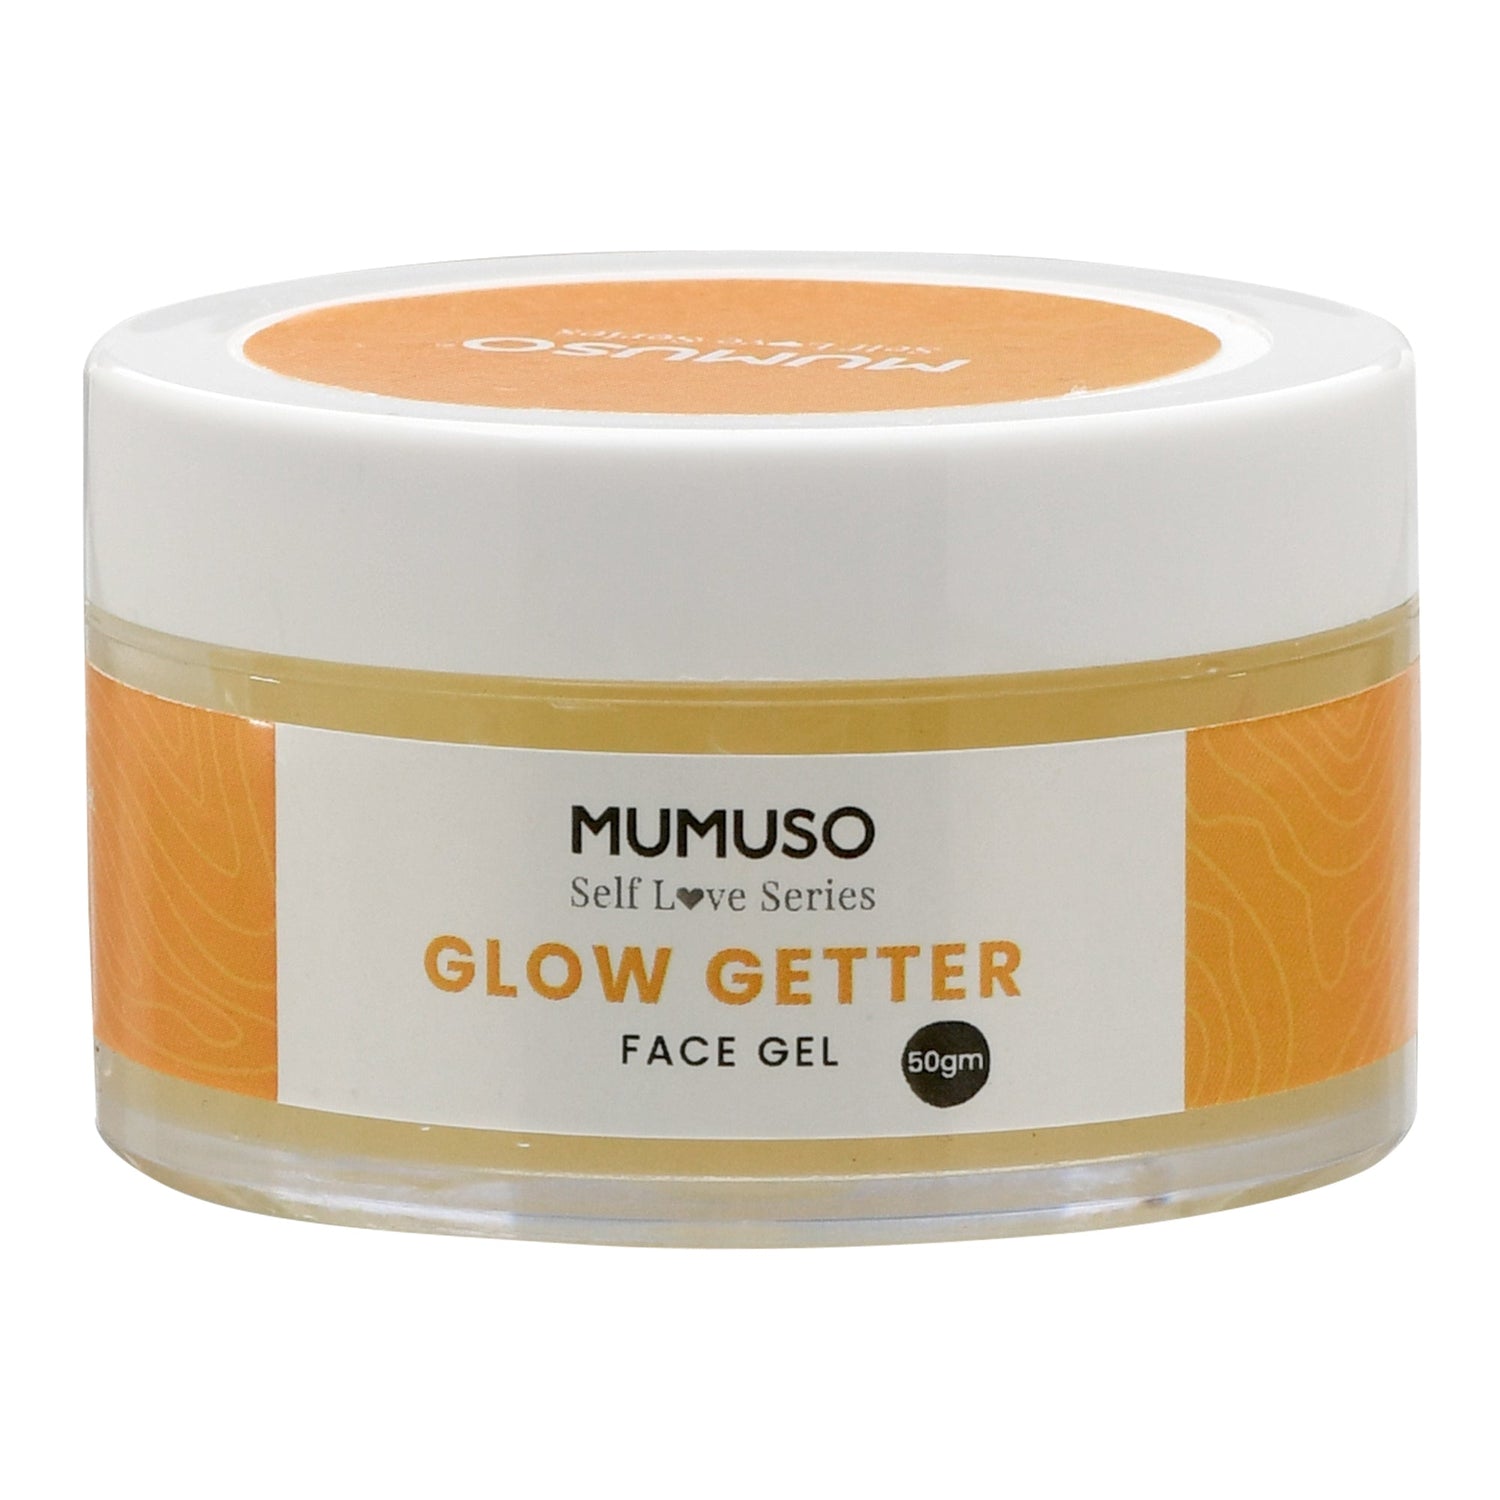 Mumuso Self Love Series - Glow Getter Face Gel Mumuso